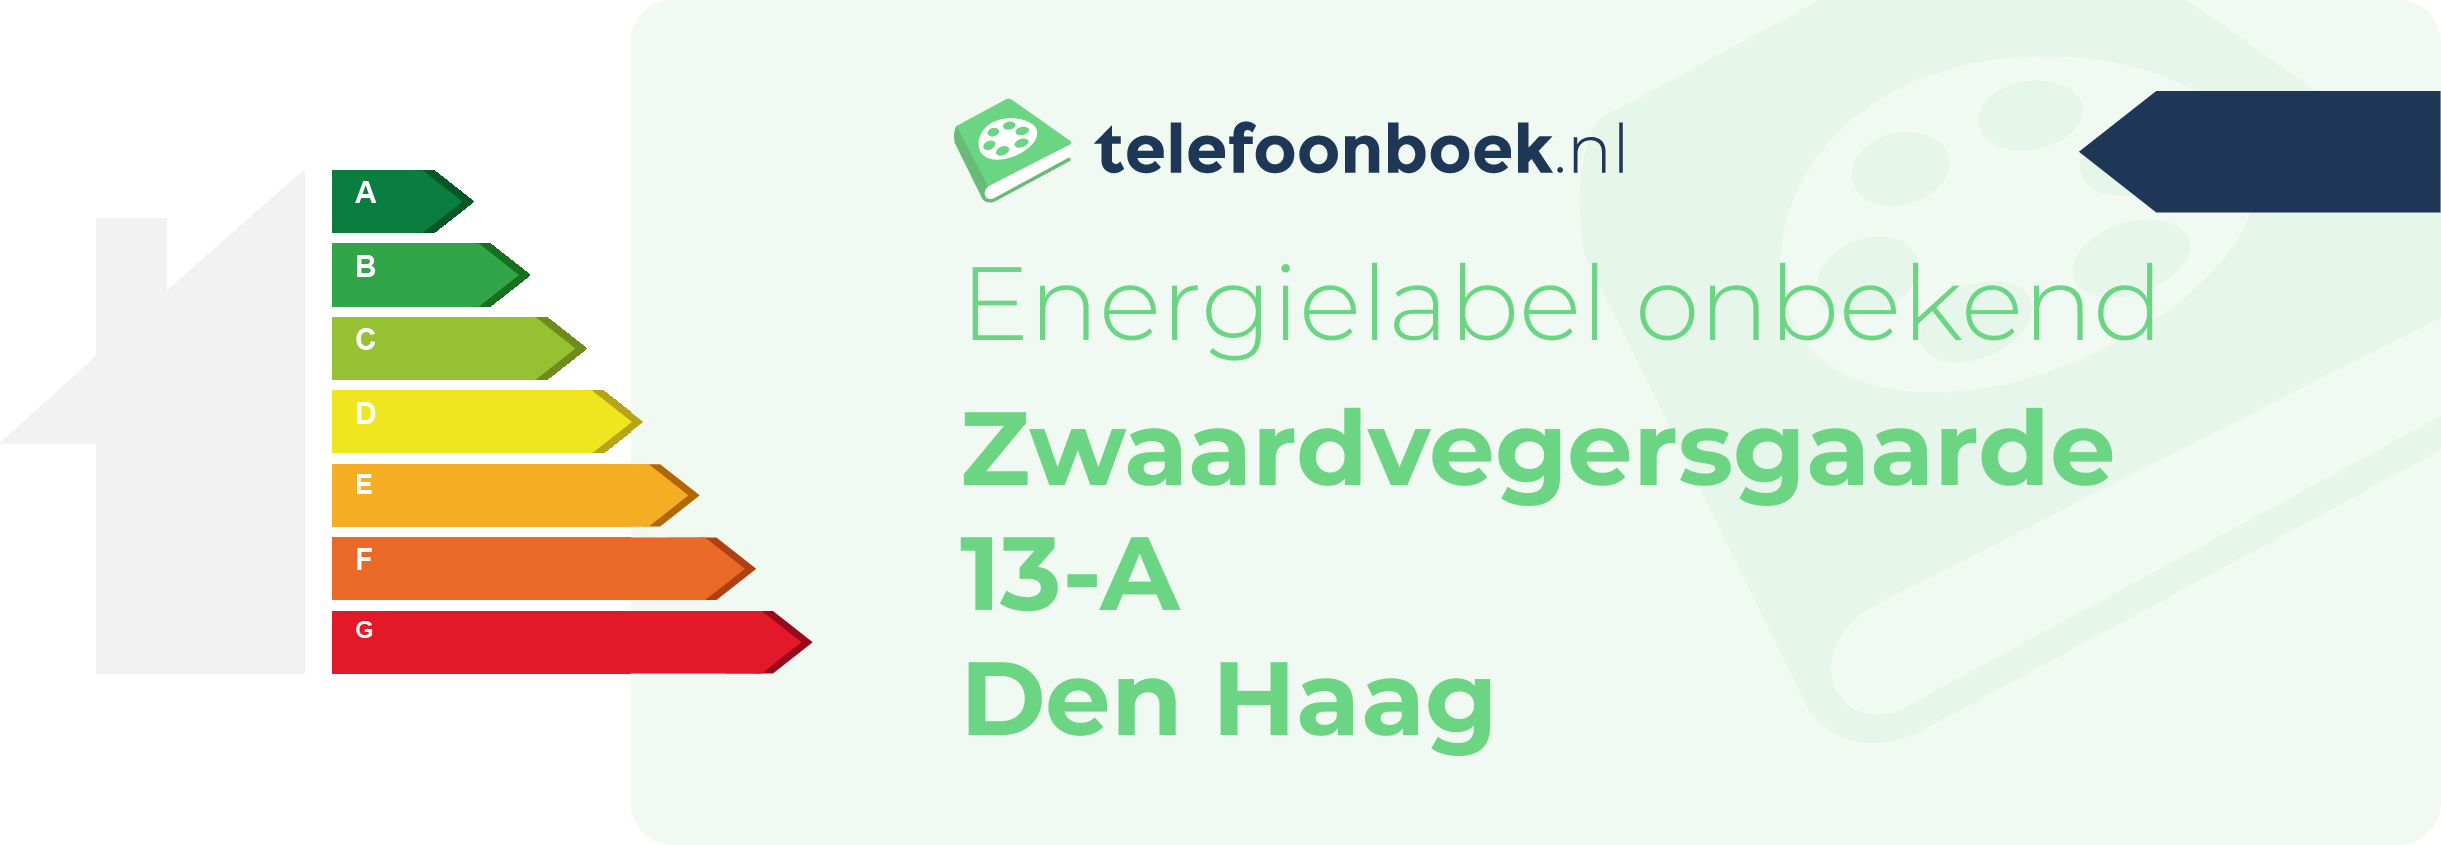 Energielabel Zwaardvegersgaarde 13-A Den Haag